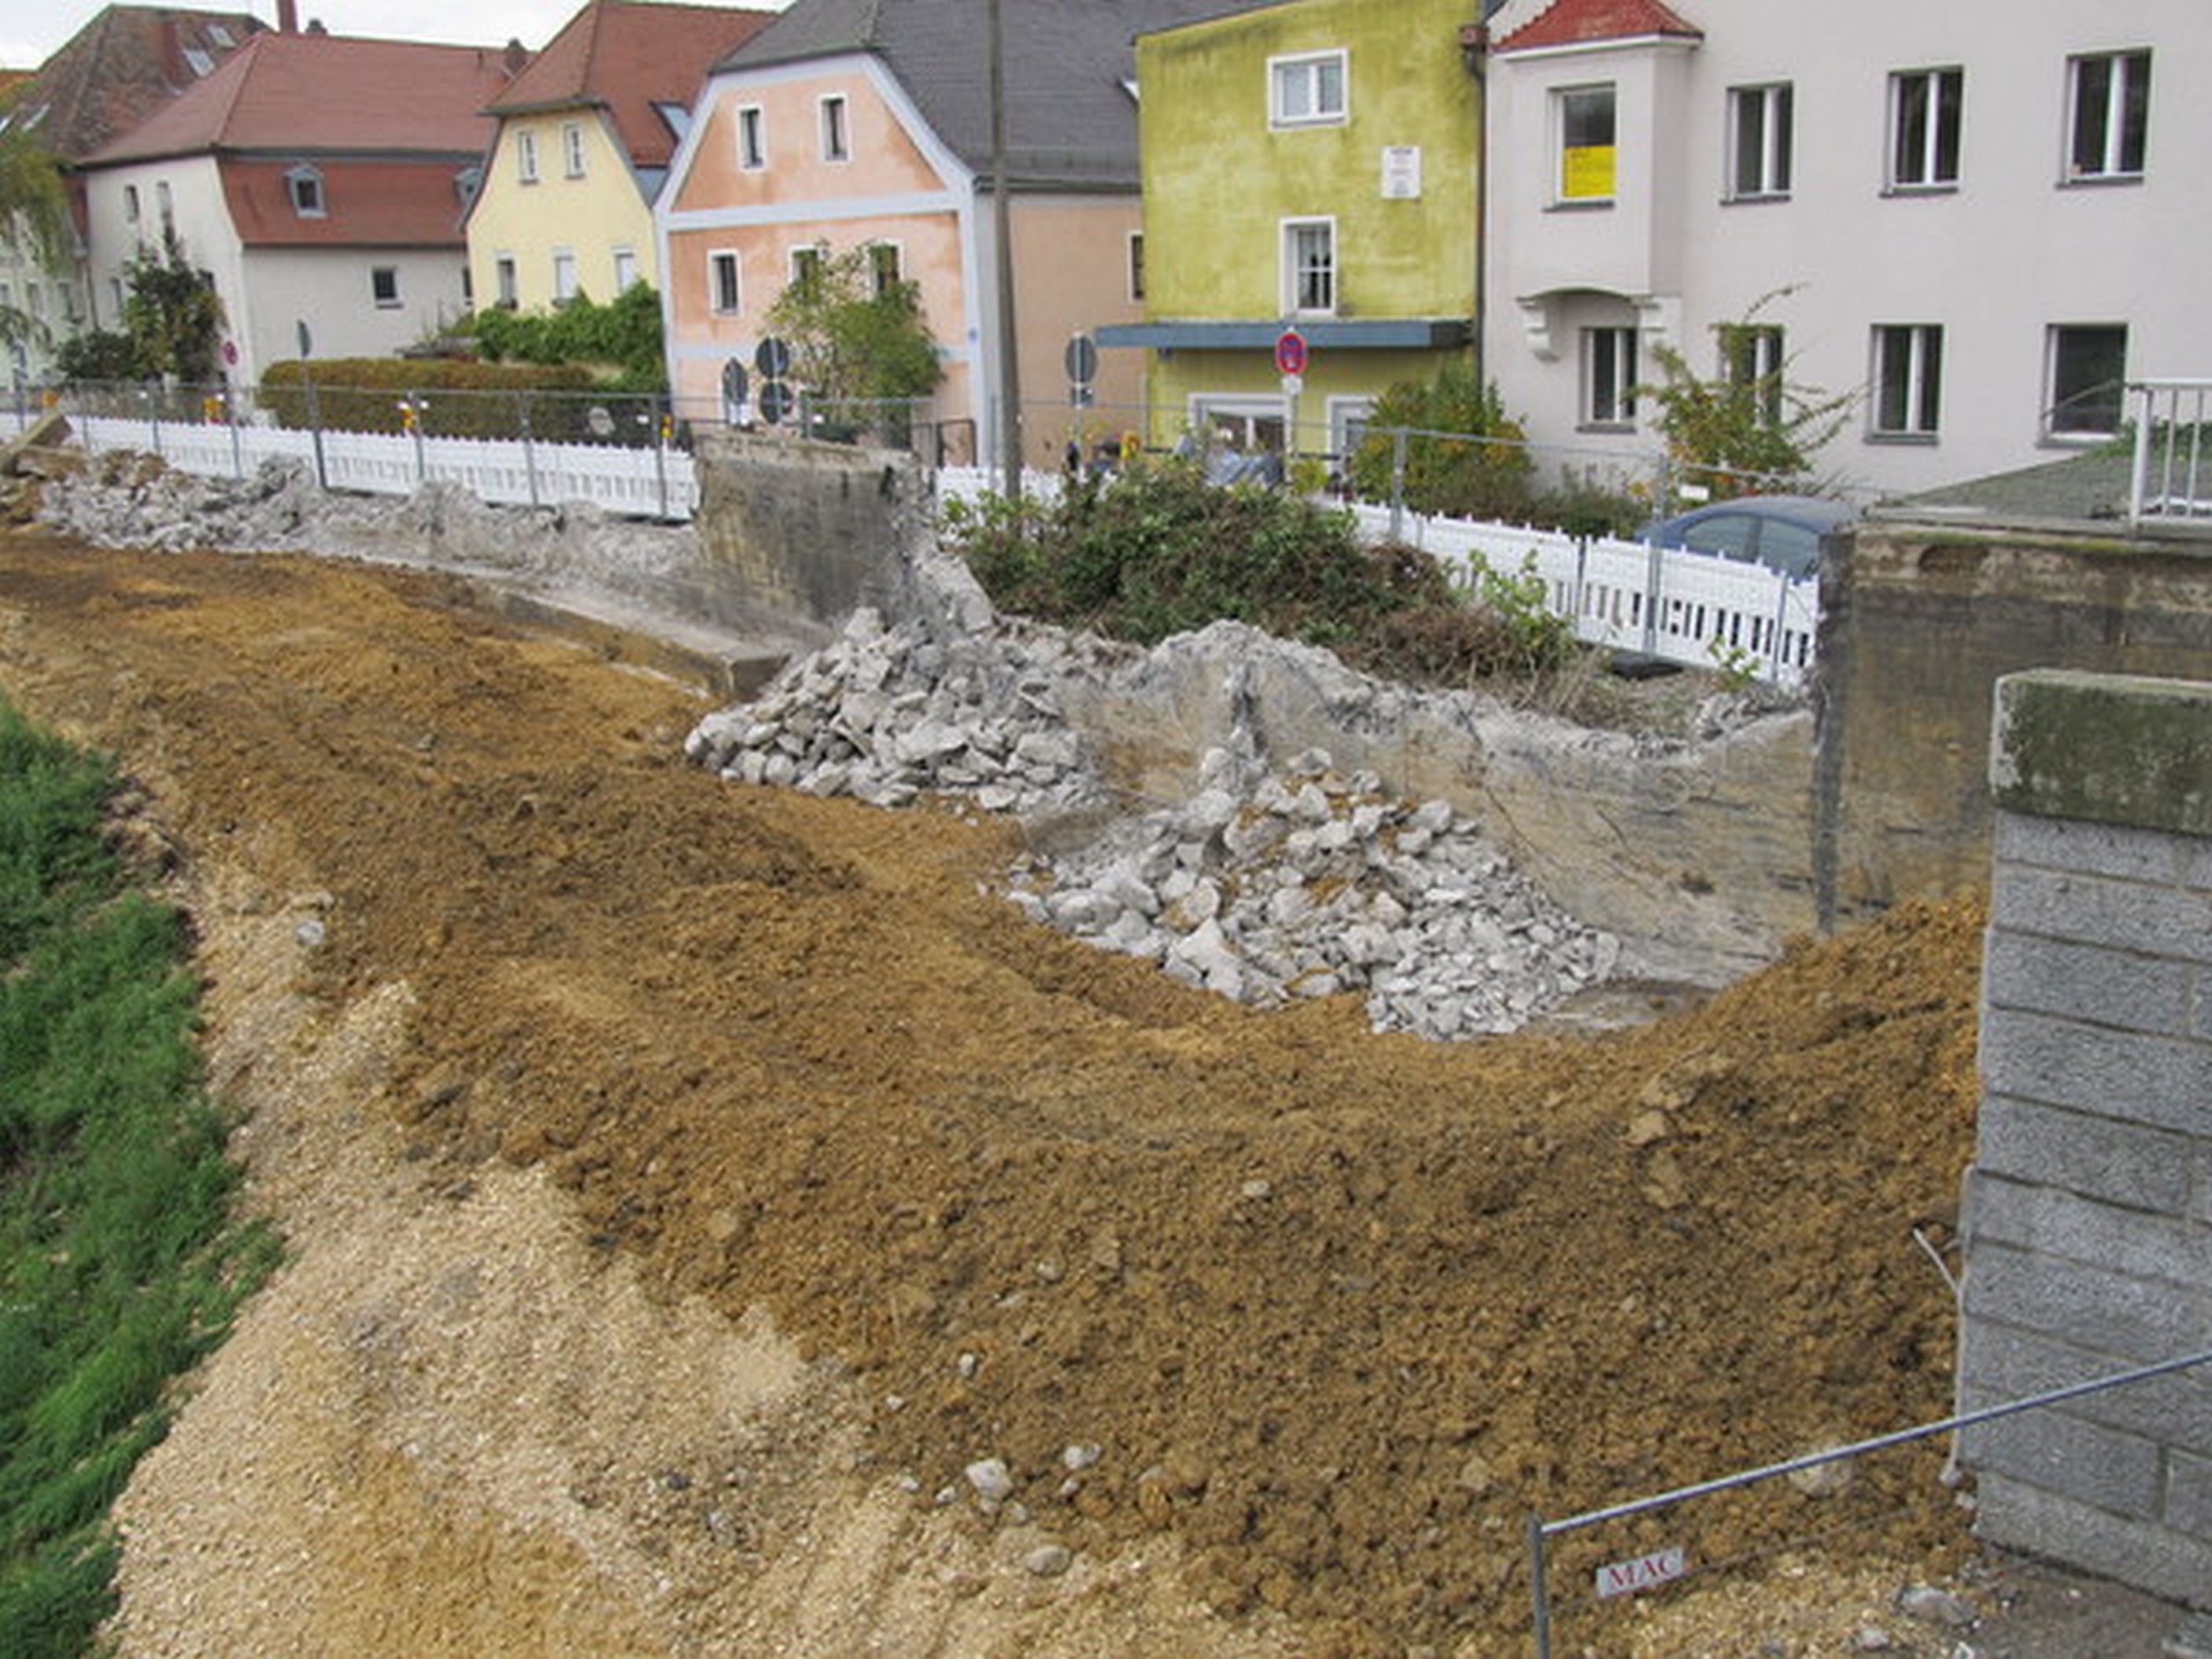 Im Vordergrund liegt Erdreich, Sand und Schotter, dahinter die bereits teilweise abgebrochene Betonwand. Im Hintergrund Bauzäune und die farbige Häuserreihe der Oberen Regenstraße. Rechts im Bild das Widerlager der Reinhausener Brücke.